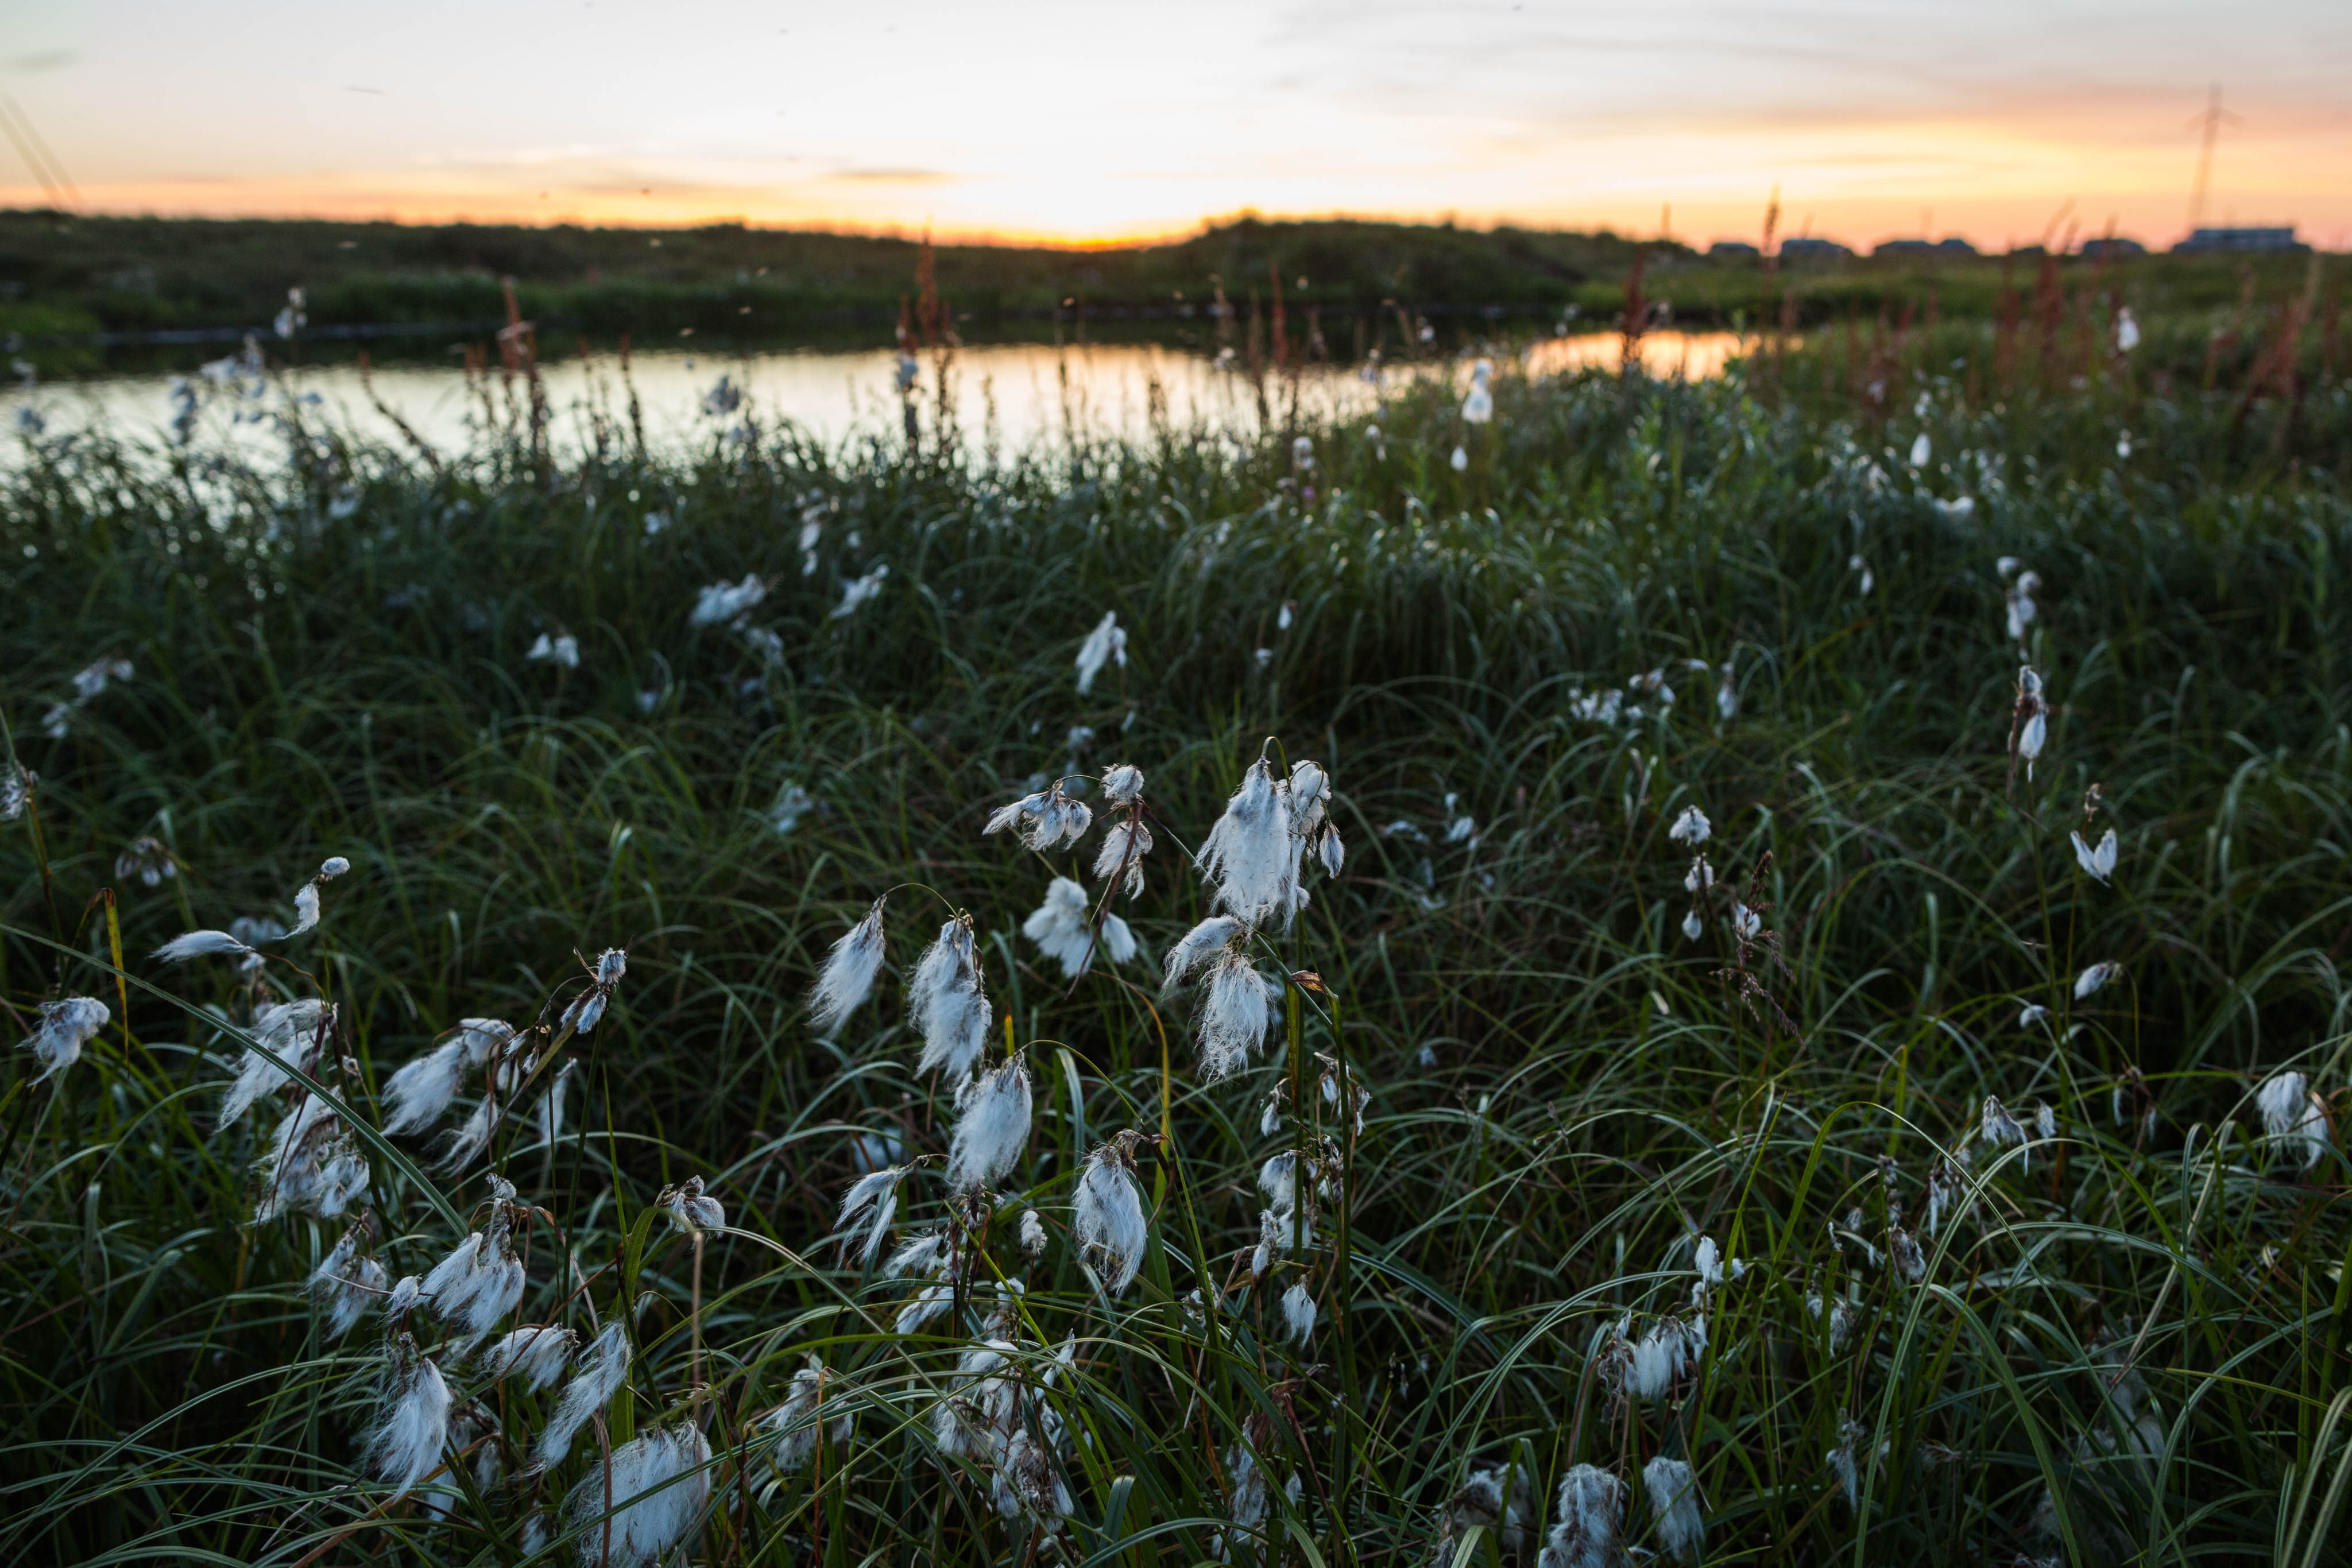 Cotton grass blows in the wind in Newtok on Wednesday, August 5, 2015. (Loren Holmes / Alaska Dispatch News)